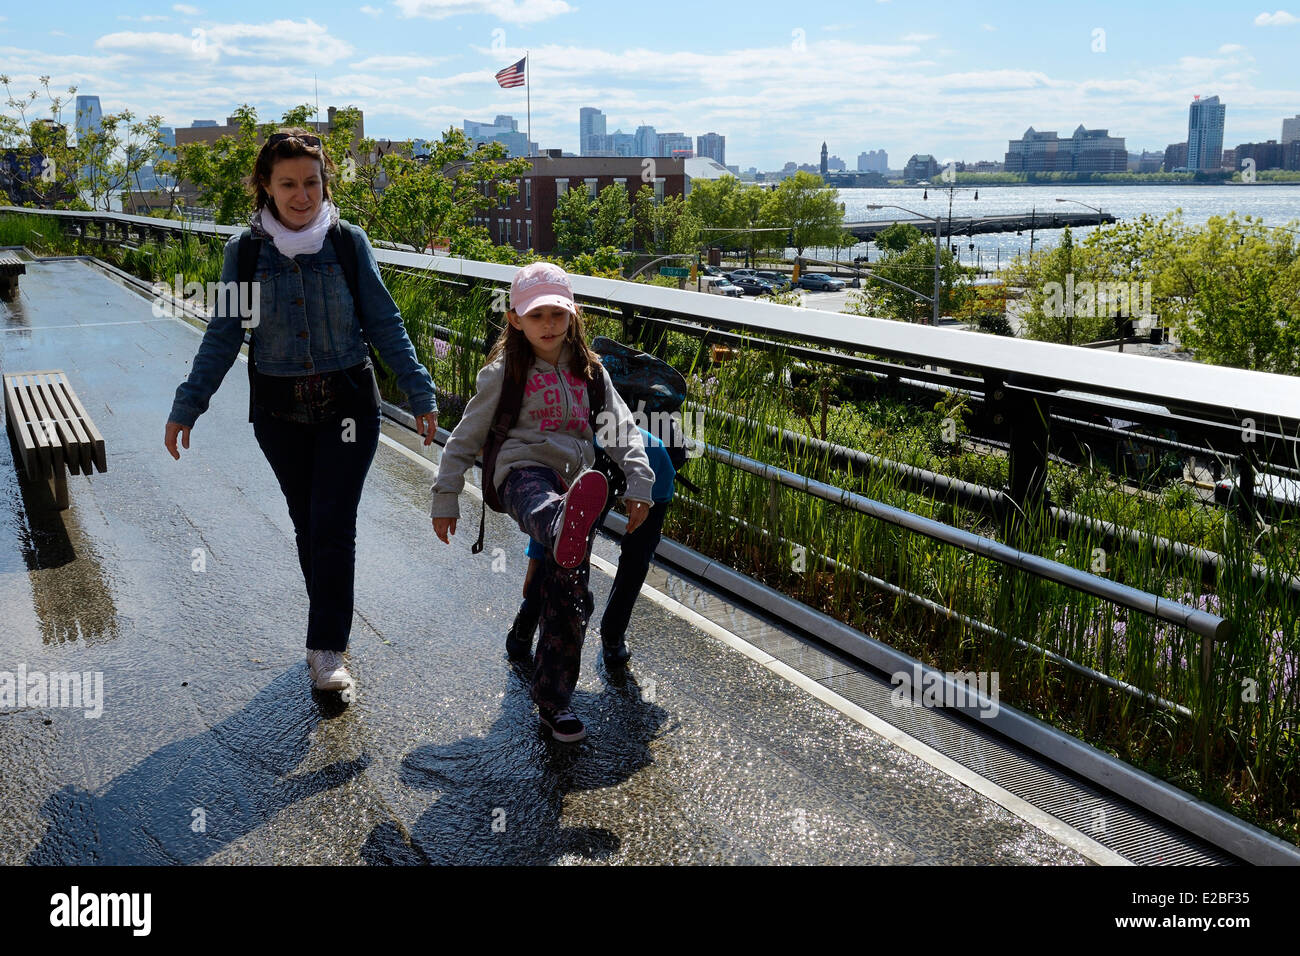 Vereinigte Staaten, New York City, Manhattan, Meatpacking District (Gansevoort Market), die High Line ist ein Park errichtet auf einem Abschnitt der ehemaligen erhöhte Fracht Eisenbahn Sporn, Blick auf den Hudson River Stockfoto